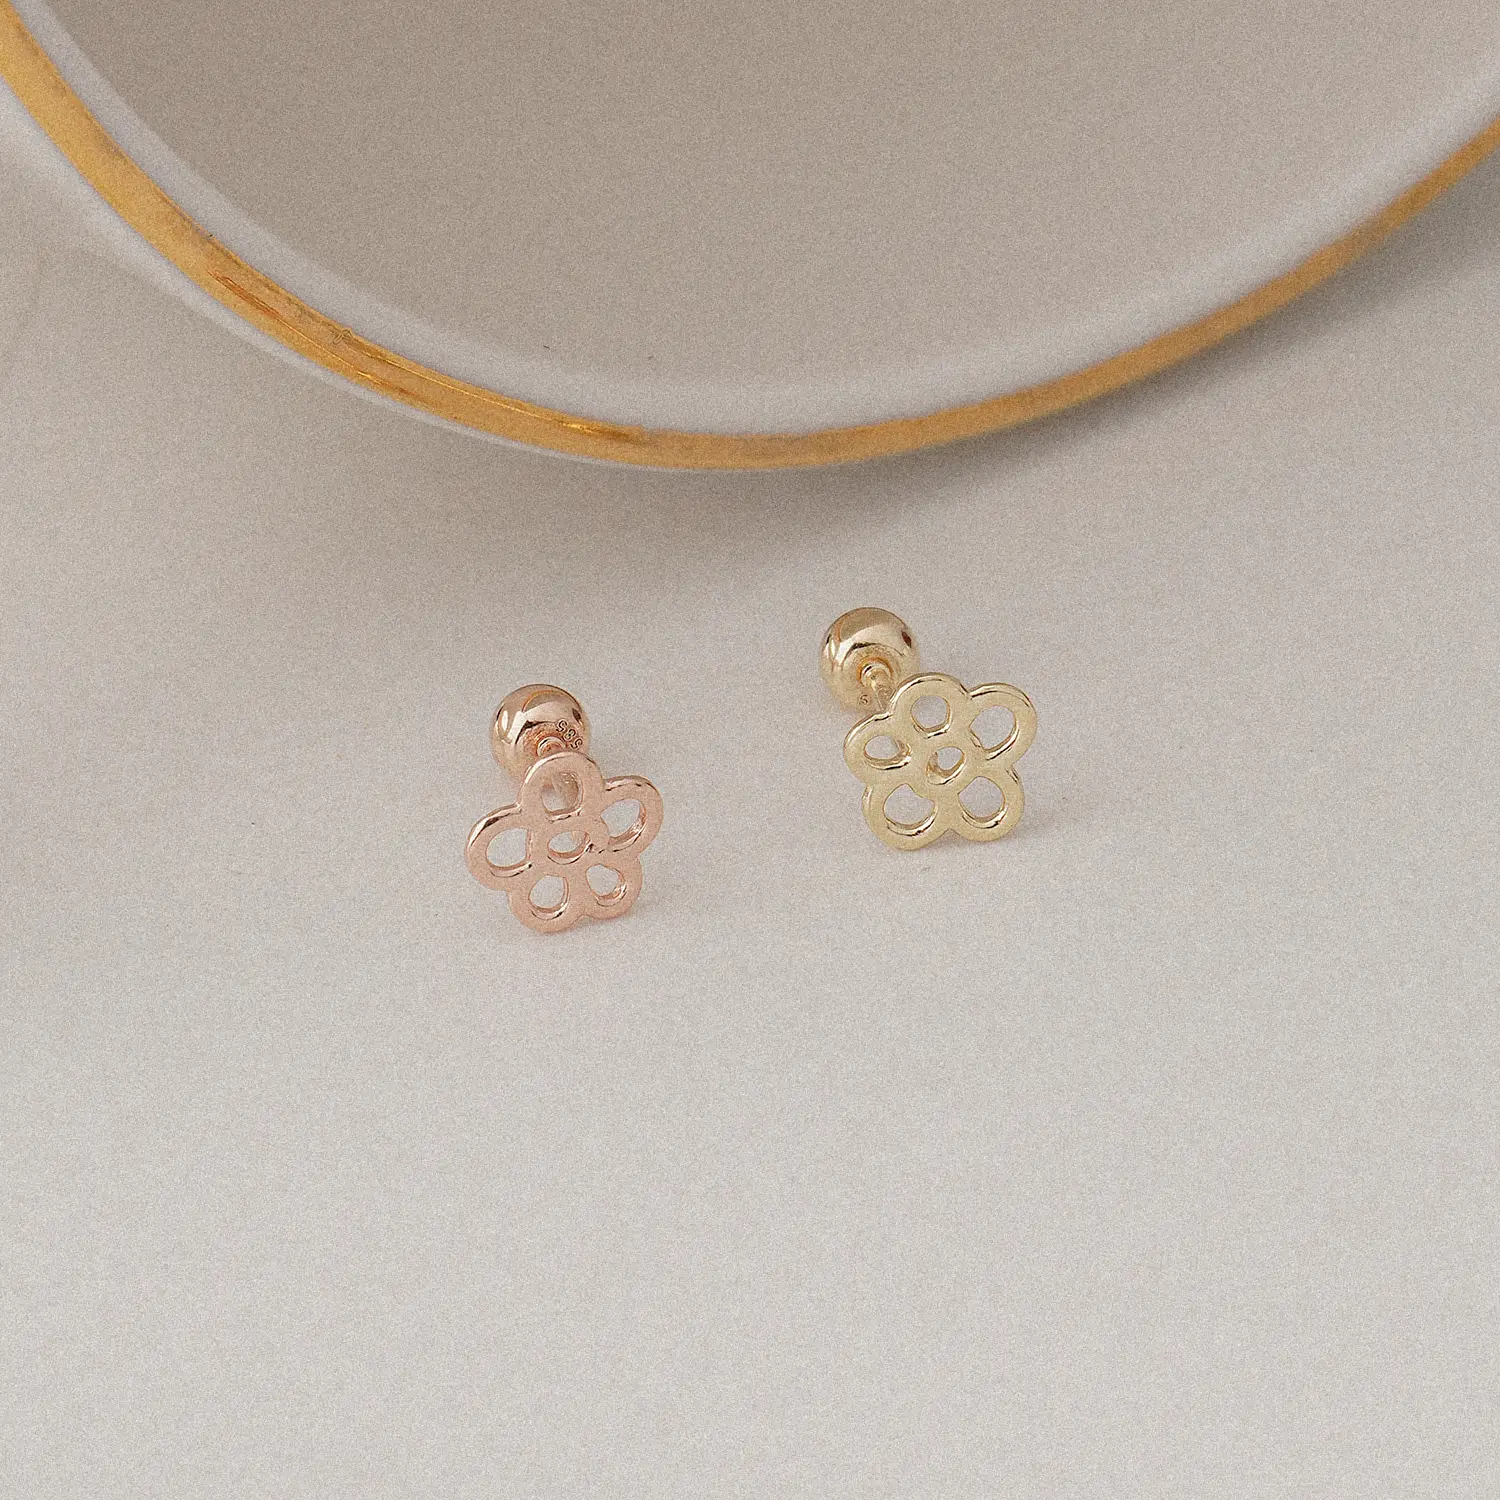 [Artpierce] 14k altın çizim hattı çiçek temel piercing kendini kore'de yapılan mücevher endüstrisinde bir üst marka olarak kuruyor